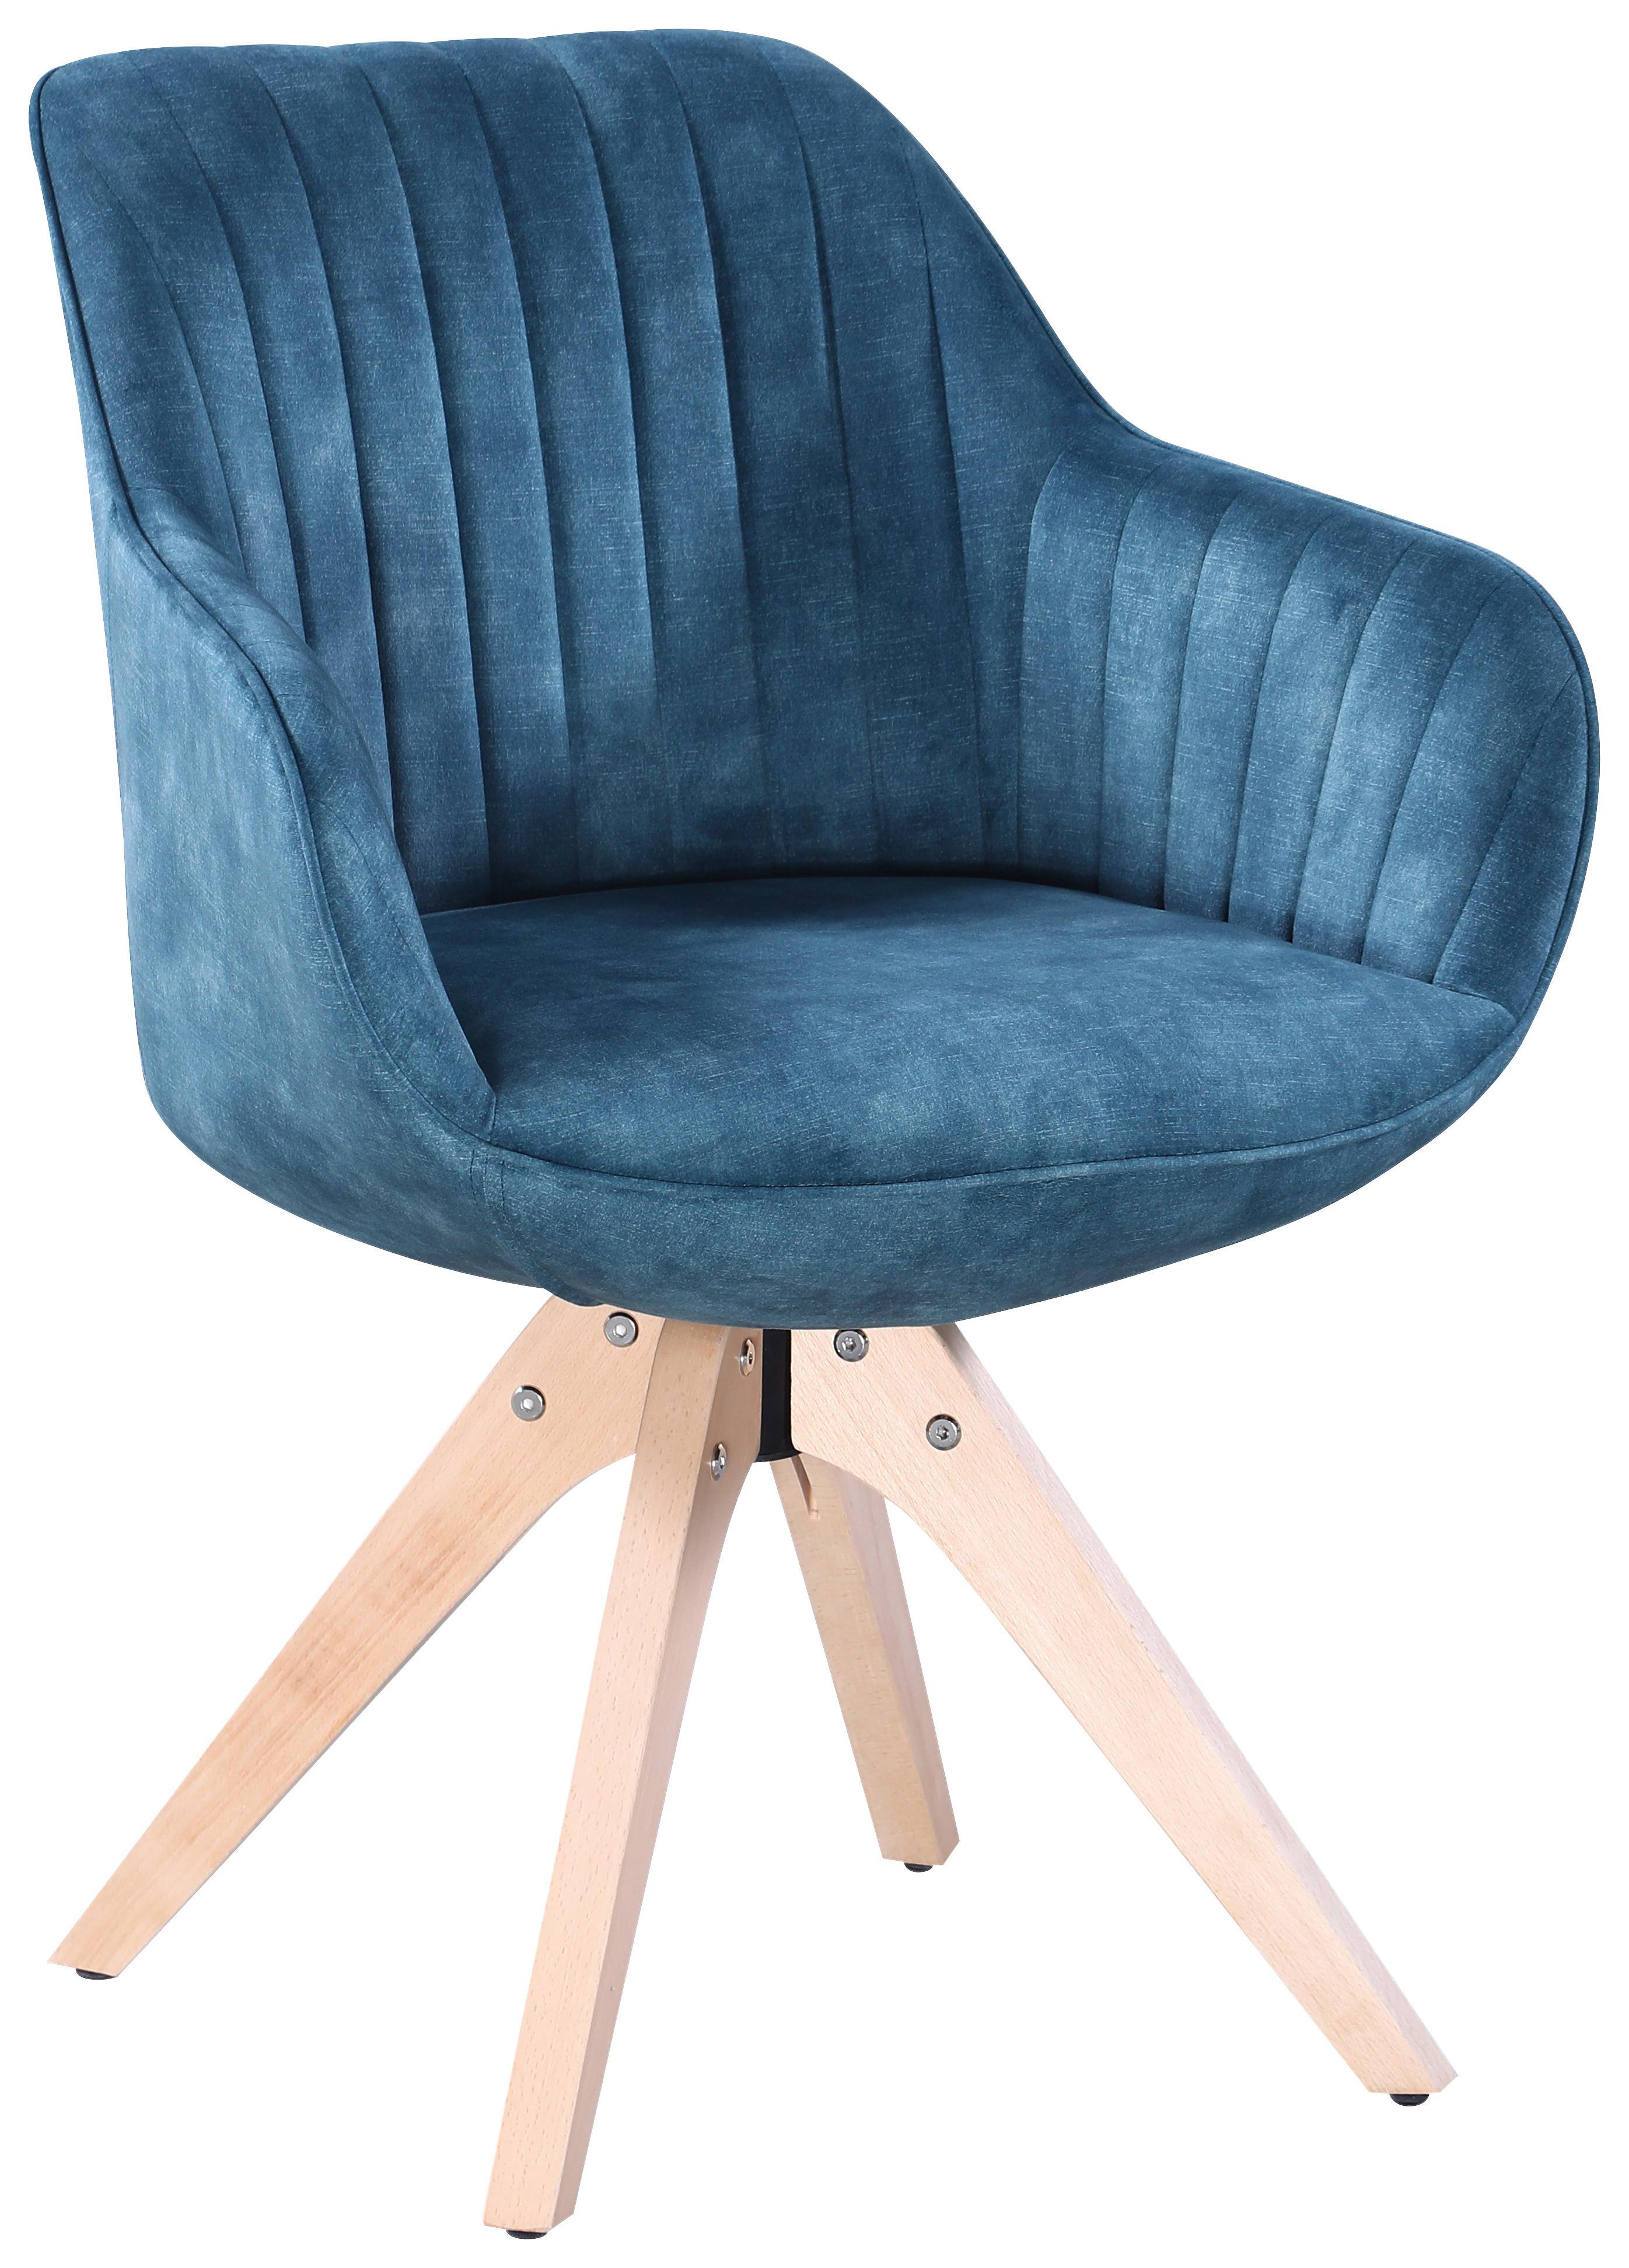 Židle S Područkami Relax - přírodní barvy/tyrkysová, Moderní, dřevo/textil (60/61/82cm) - Modern Living